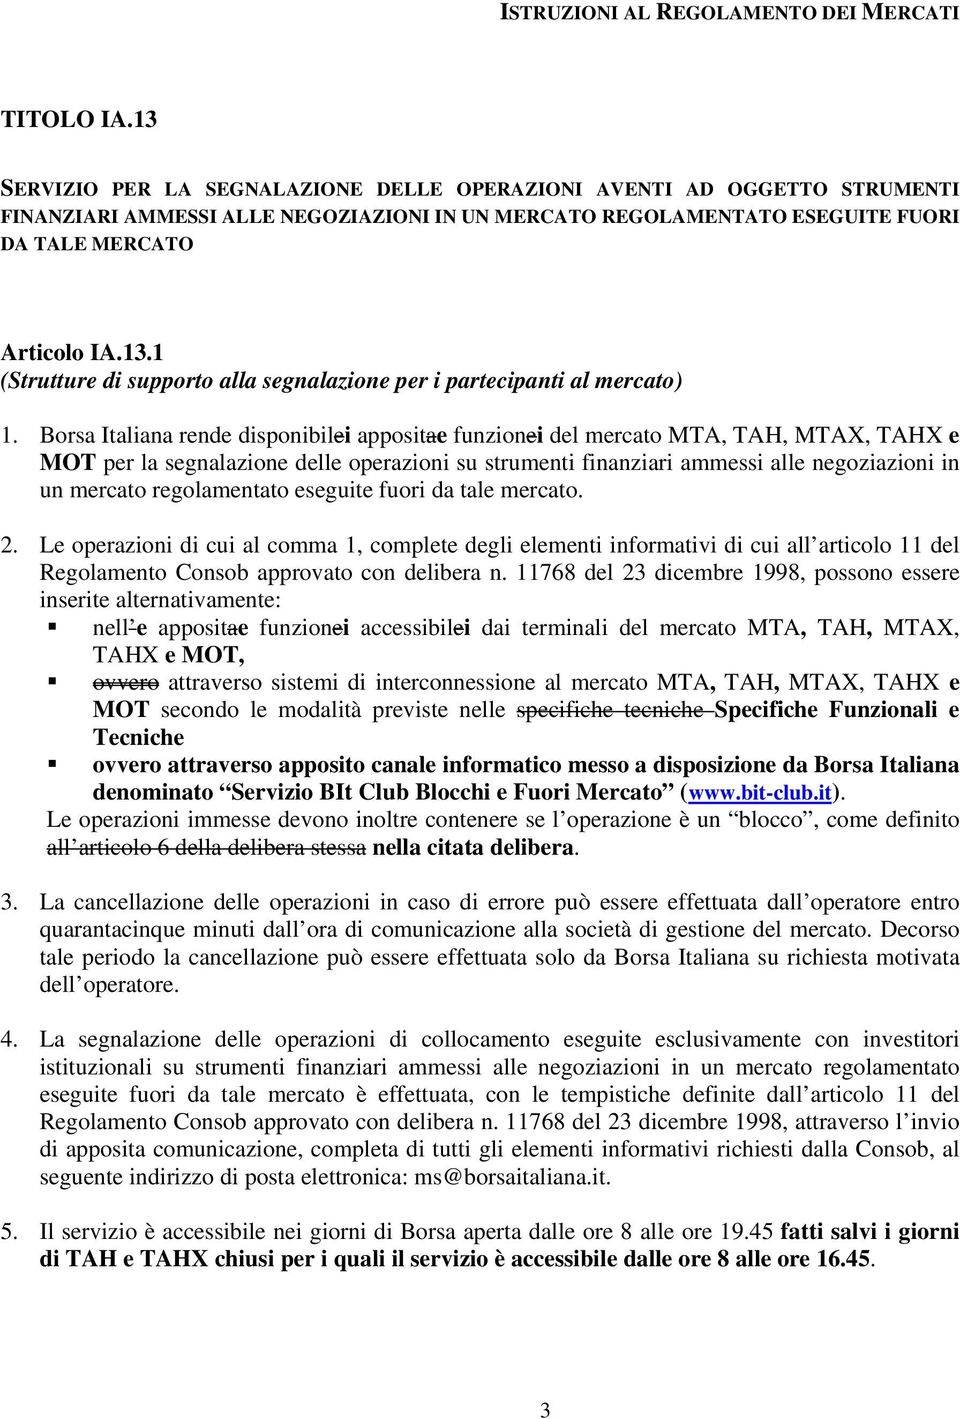 Borsa Italiana rende disponibilei appositae funzionei del mercato MTA, TAH, MTAX, TAHX e MOT per la segnalazione delle operazioni su strumenti finanziari ammessi alle negoziazioni in un mercato